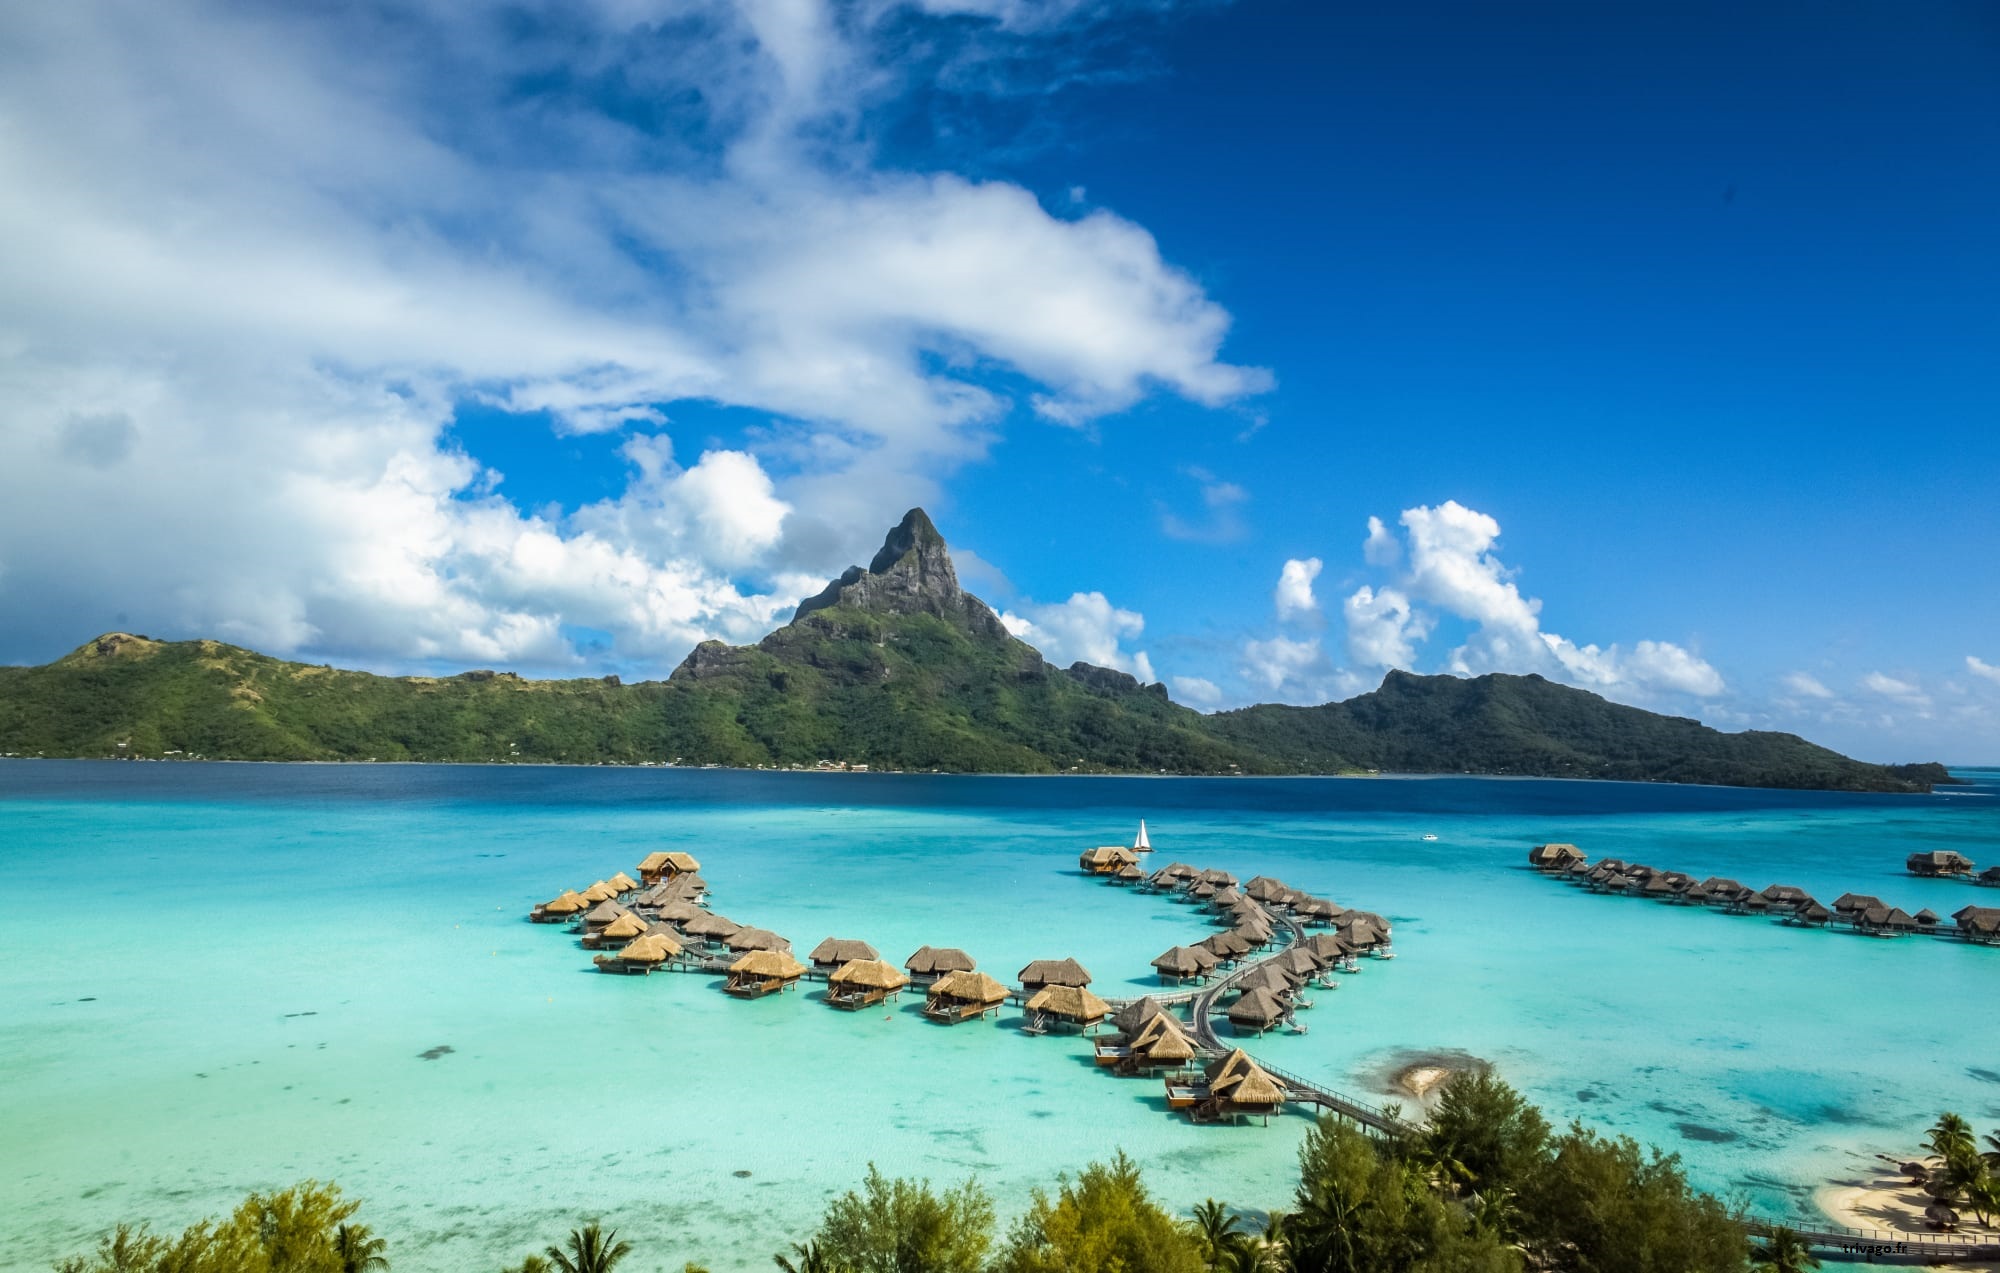 L'intercontinental Bora Bora Resort & Thalasso SPA est un hôtel de luxe comprenant 84 villas et 88 chambres sur pilotis. Le lagon bleu vif de Bora Bora et sa mer de saphir environnante fascinent les amoureux du monde entier. C'est une des destinations les plus romantiques pour passer un voyage de noce inoubliable. 